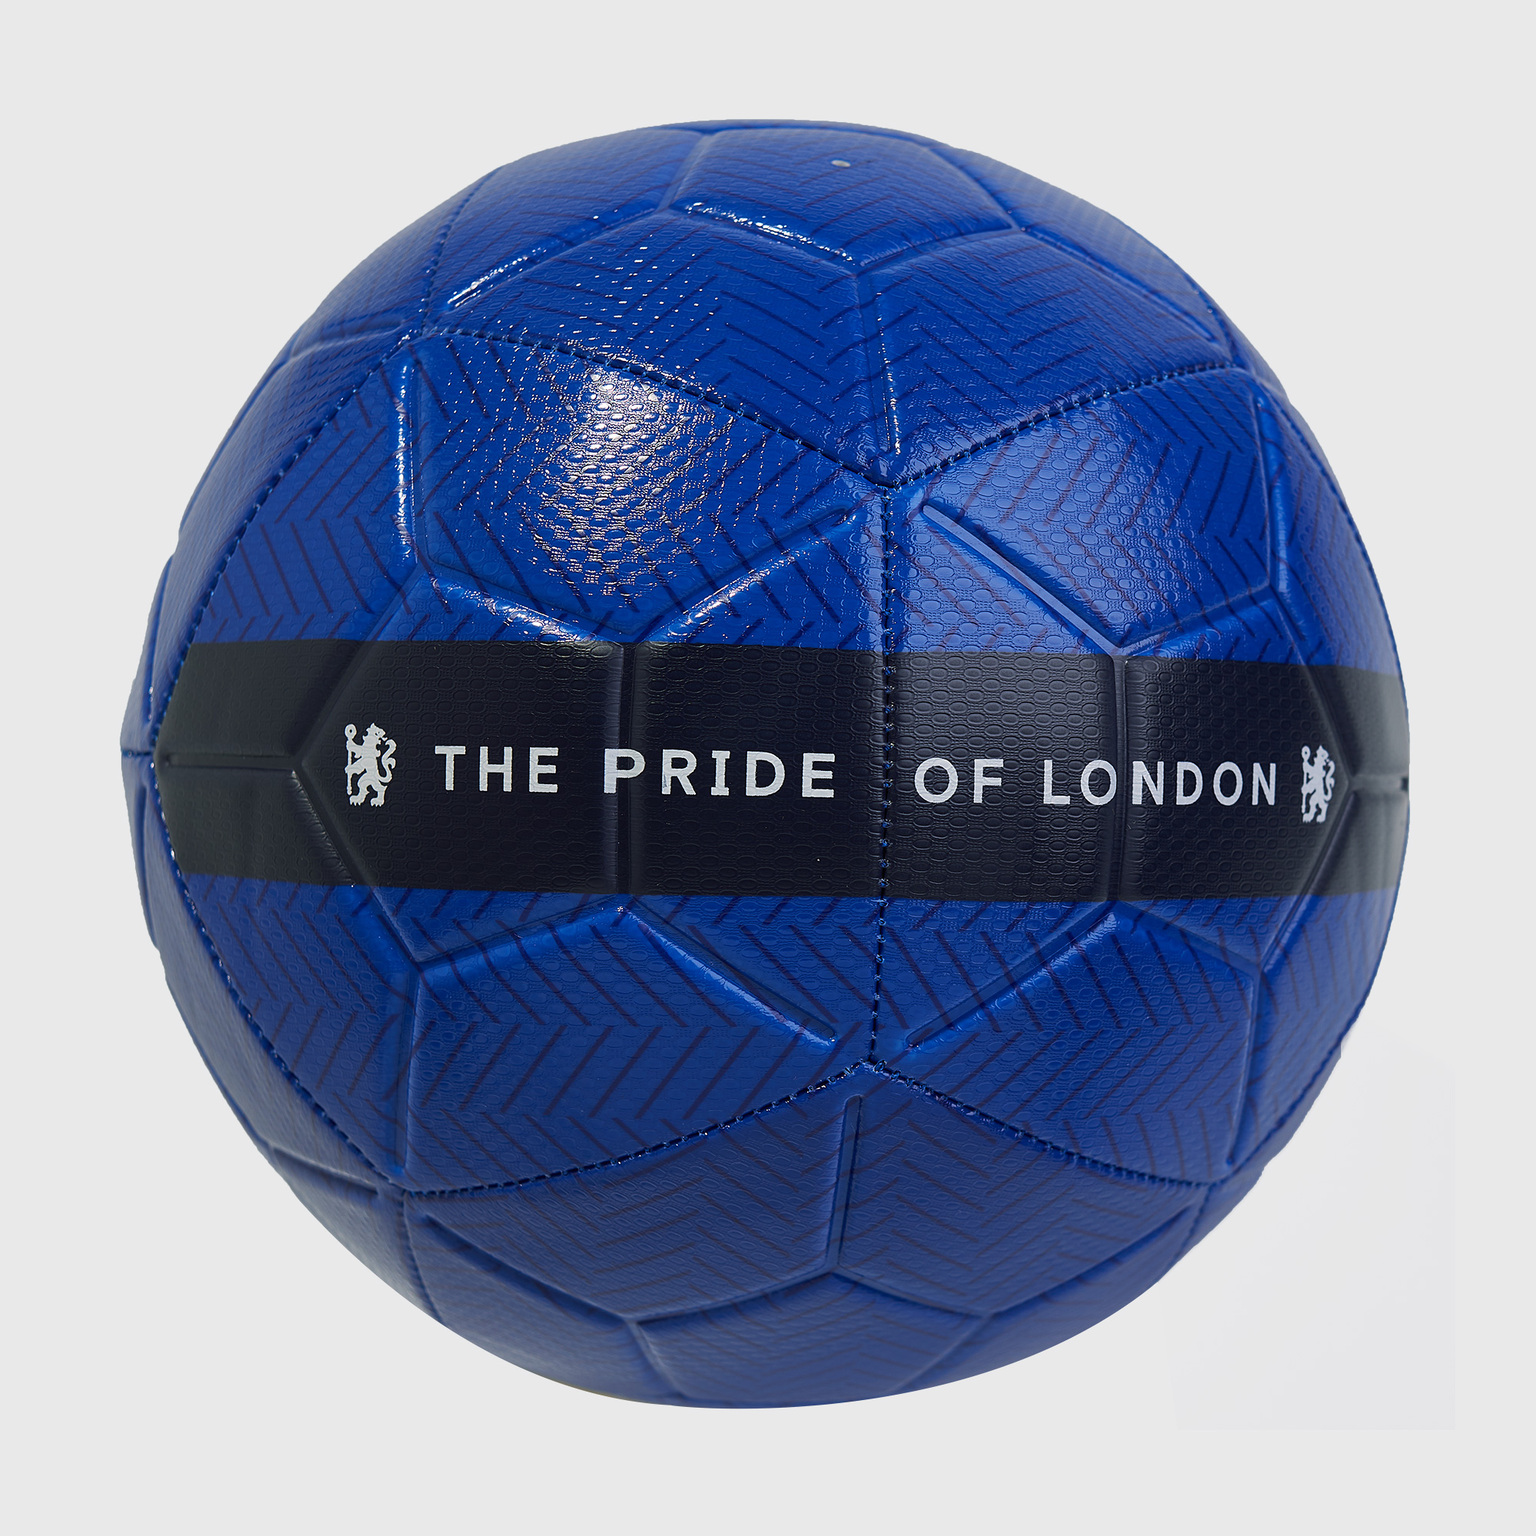 Футбольный мяч Nike Chelsea Strike CQ7848-495